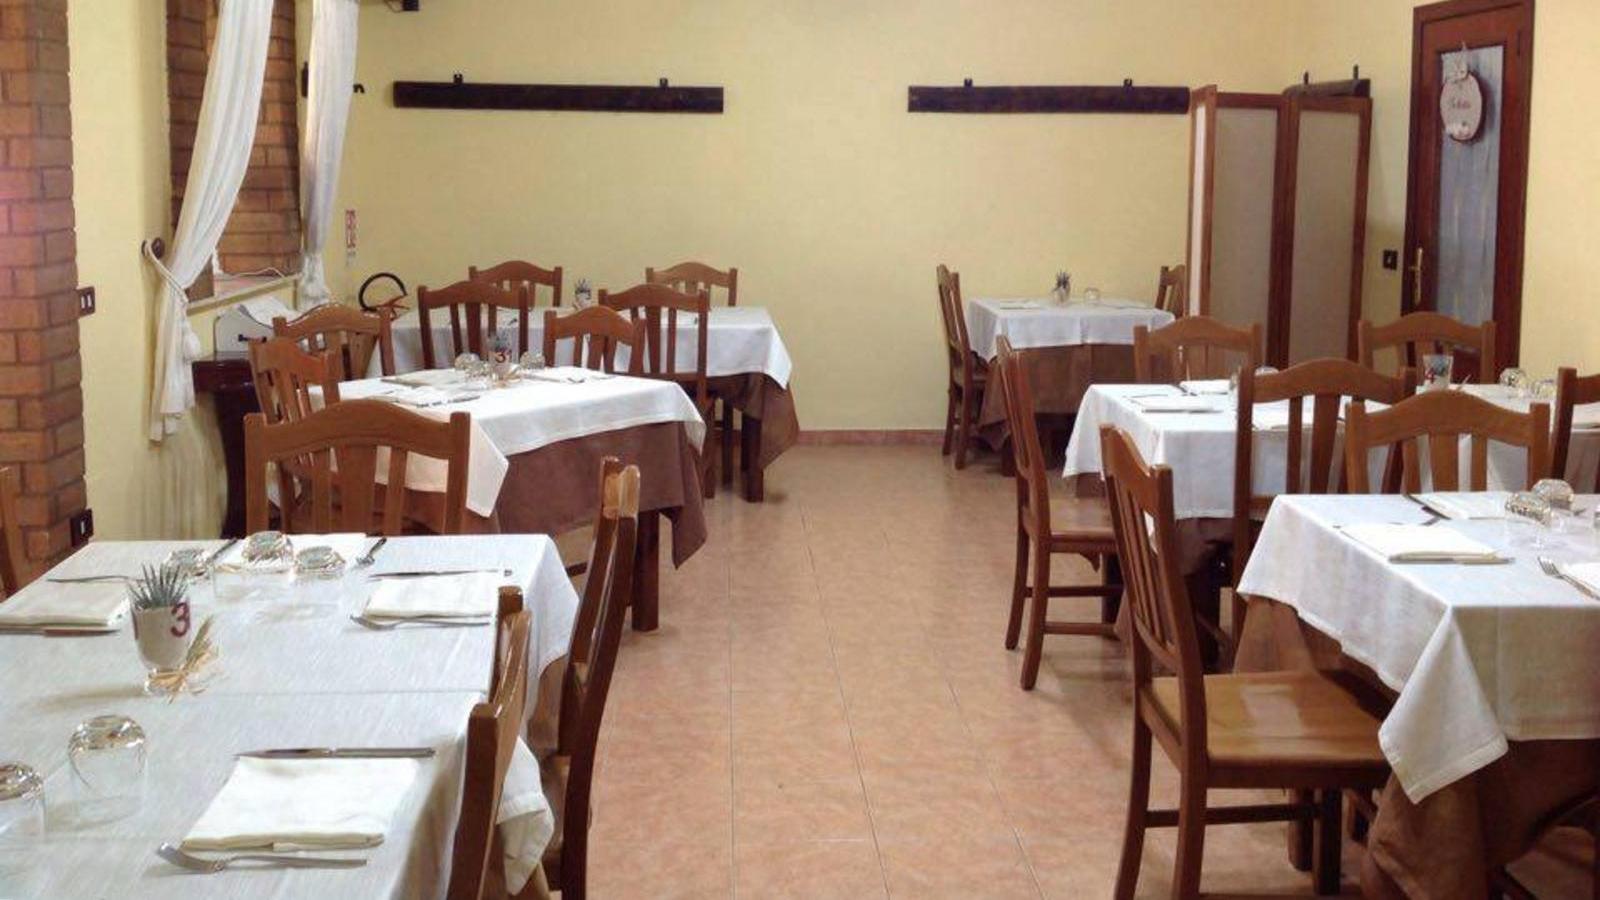 Dove mangiare a Foggia - Trattoria Da Italo | Localtourism.it